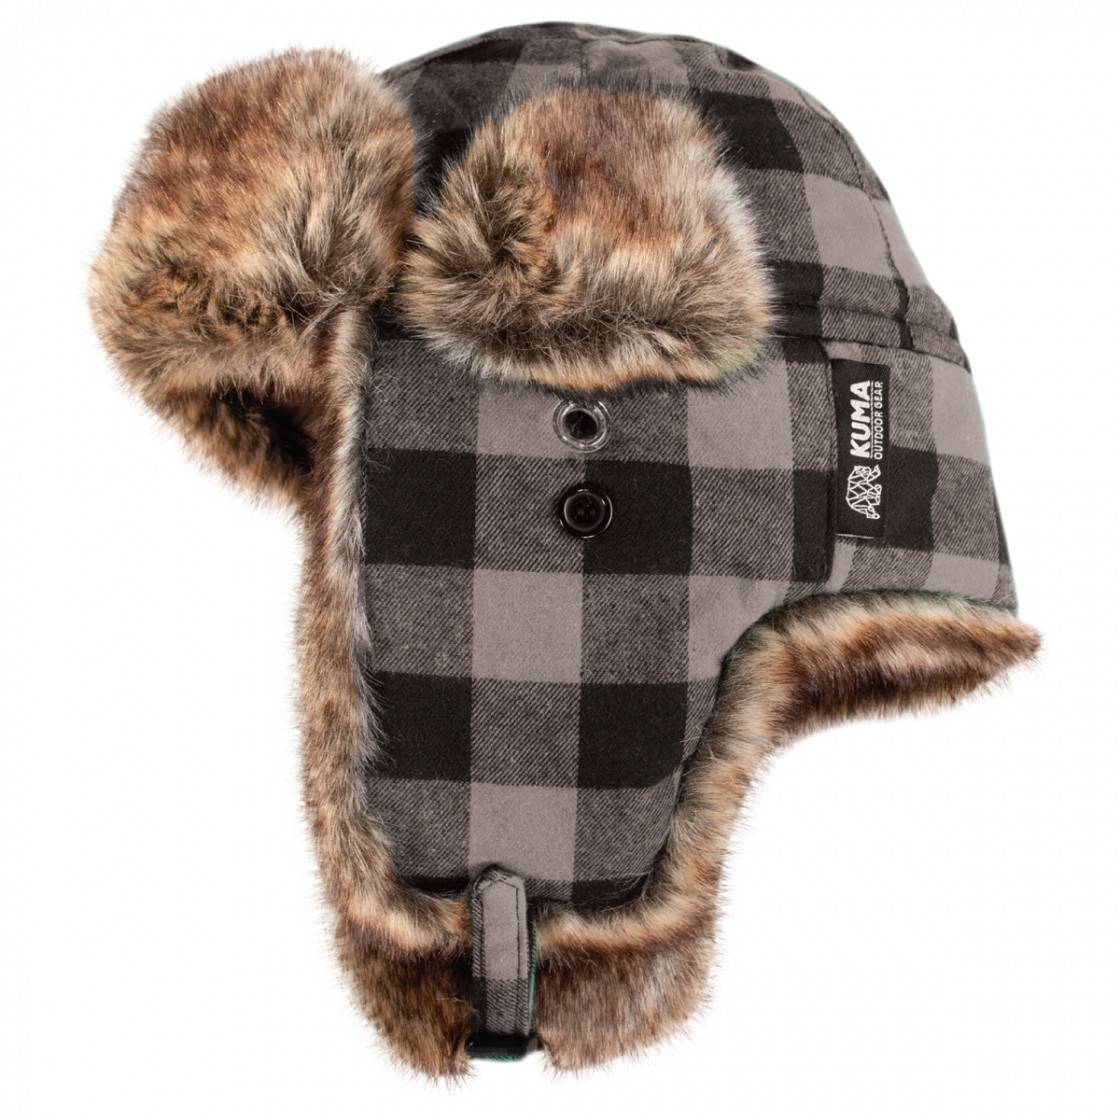 Fur trapper cap - Kuma Outdoor